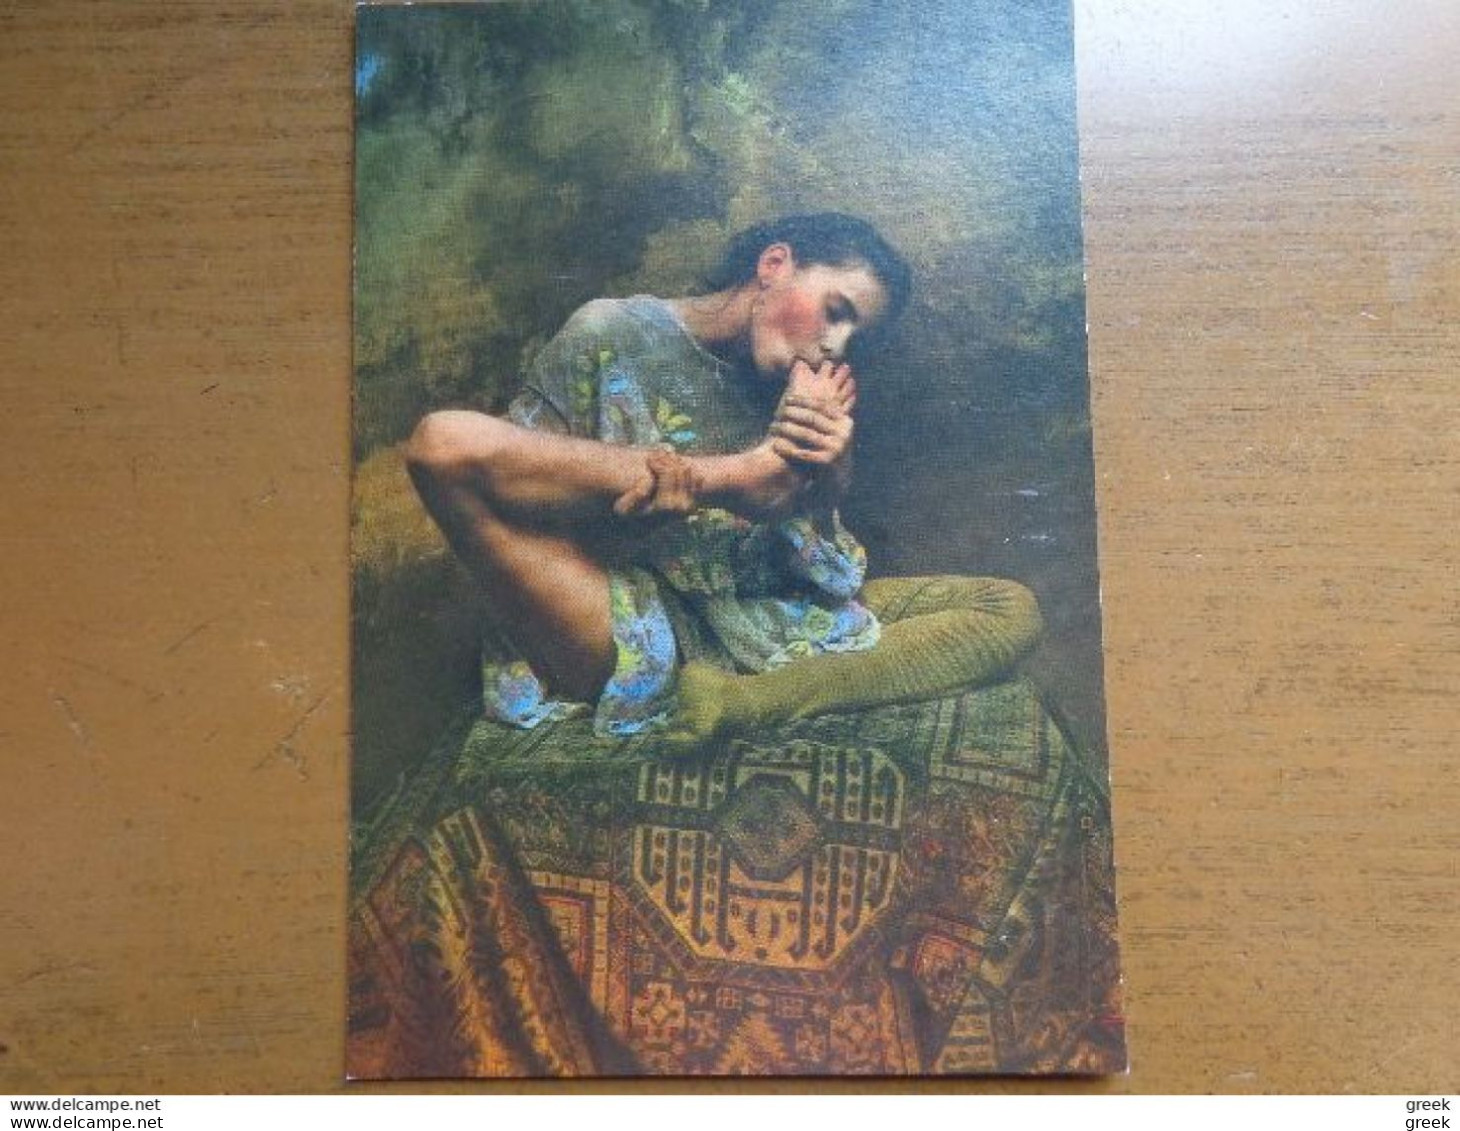 20 postkaarten van Jan Saudek (fotografie, naakt, sexy) zie foto's --> onbeschreven